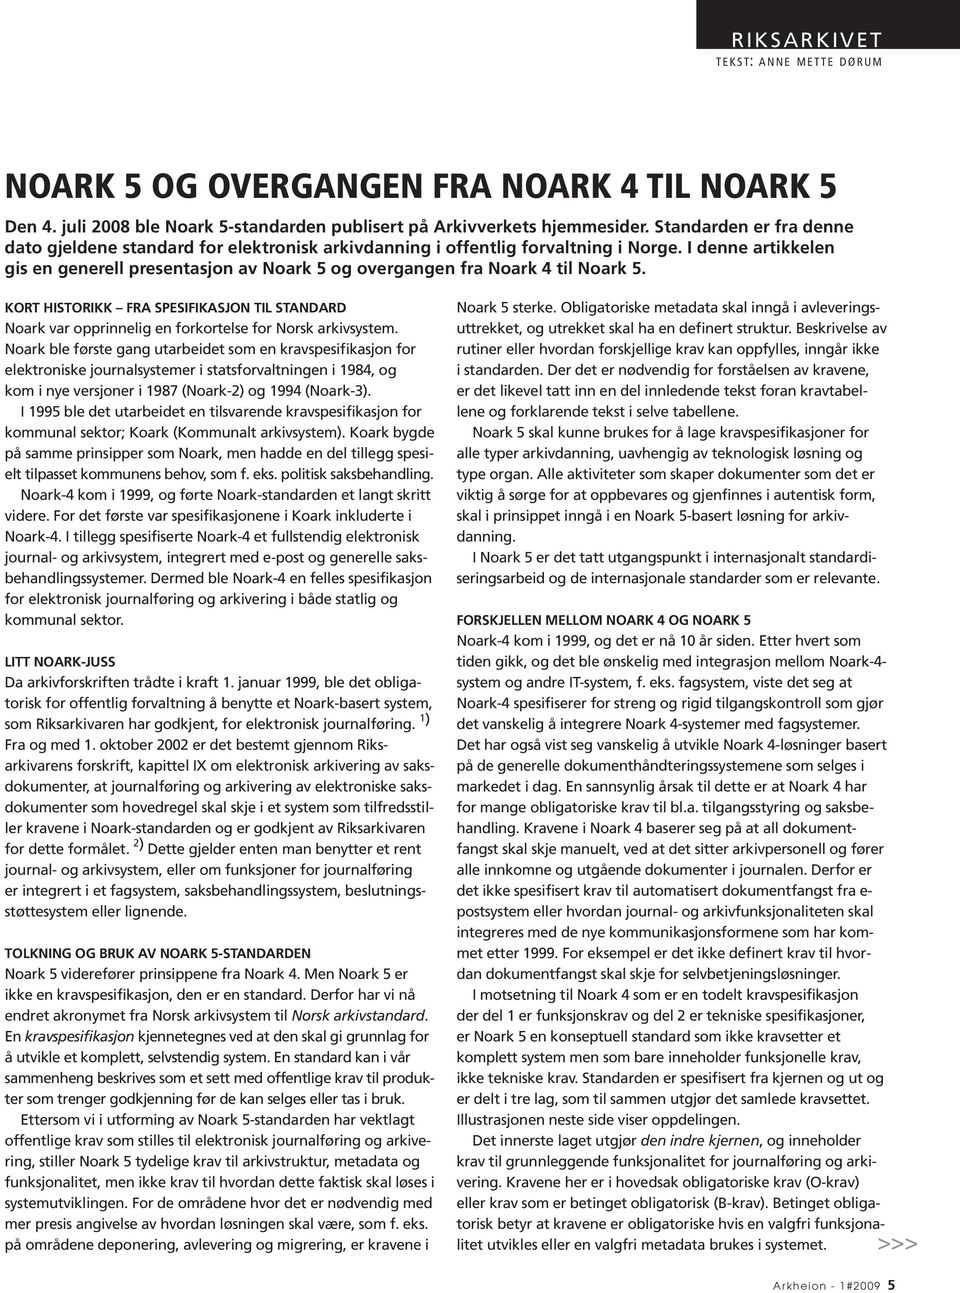 I denne artikkelen gis en generell presentasjon av Noark 5 og overgangen fra Noark 4 til Noark 5.